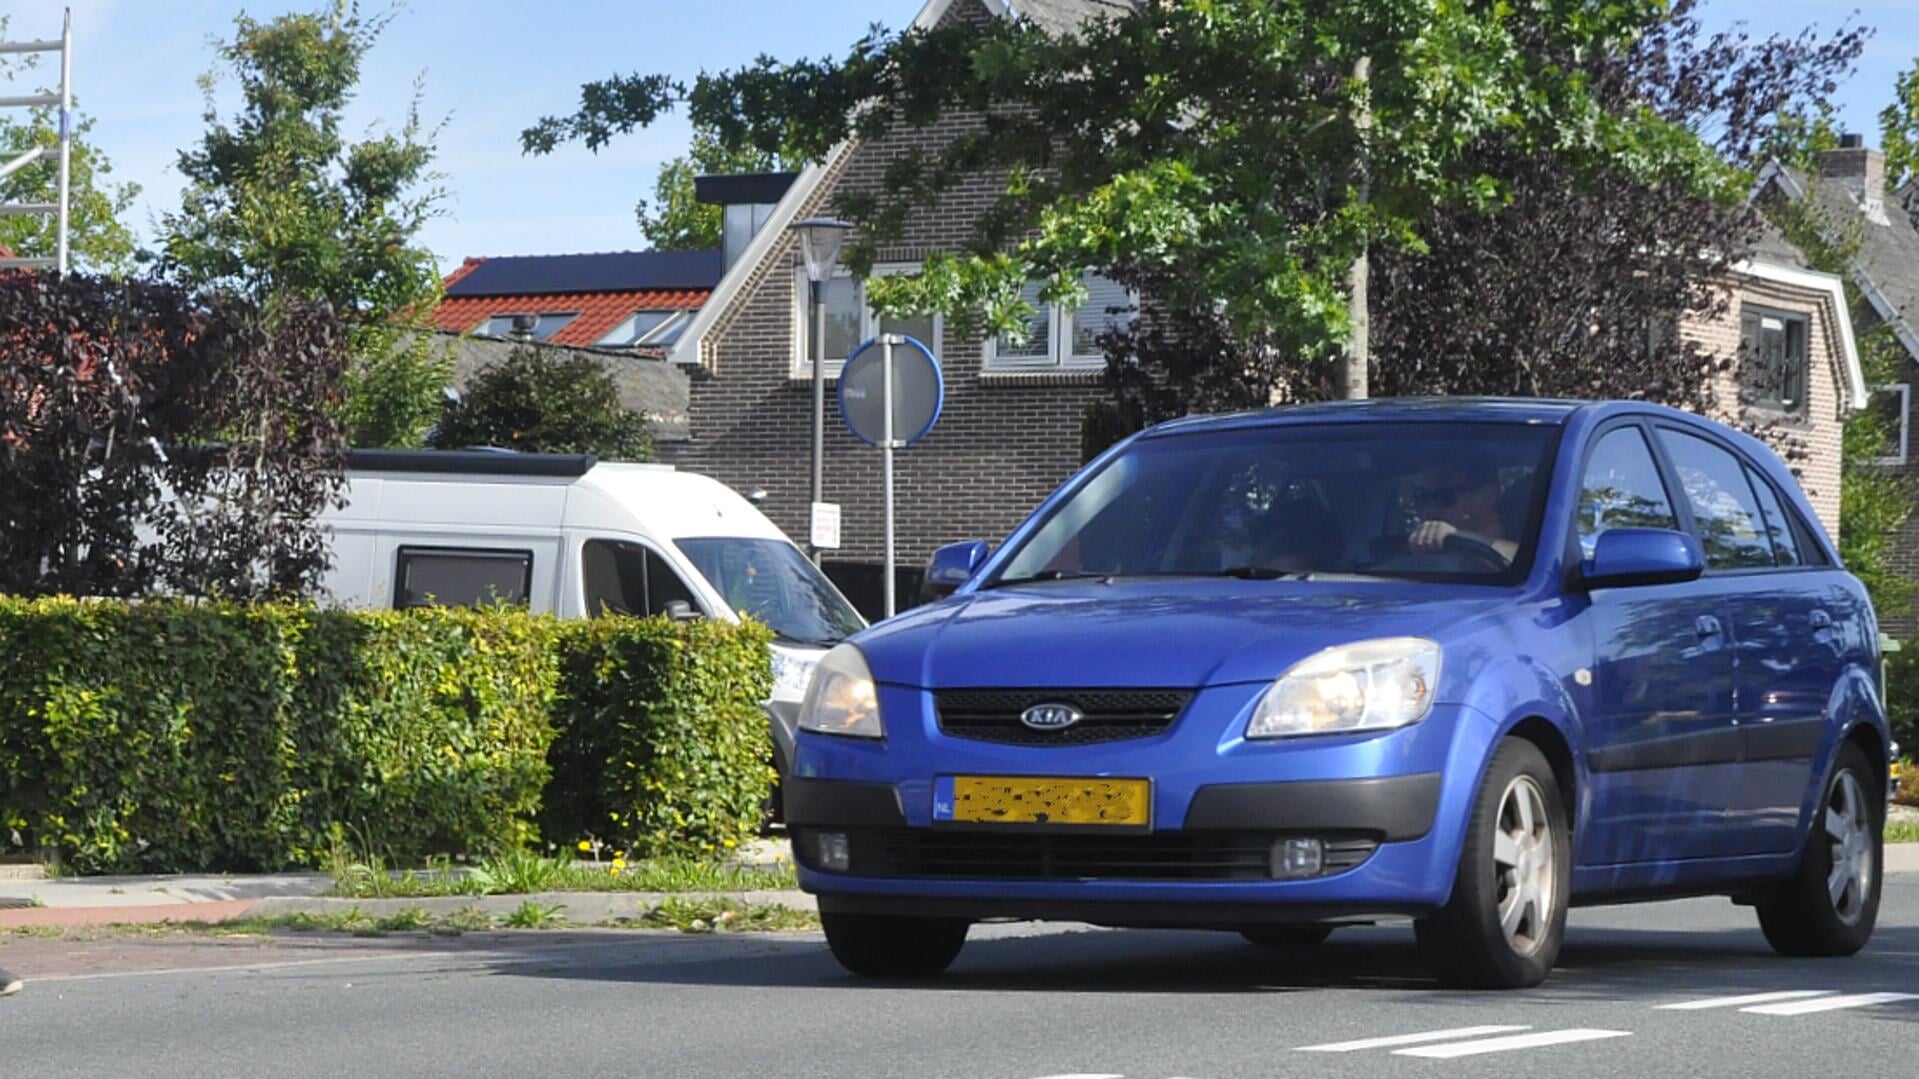 Bewoners aan de Van Zuijlen van Nieveltlaan hopen dat de verkeerssnelheid hier beter gehandhaafd wordt.